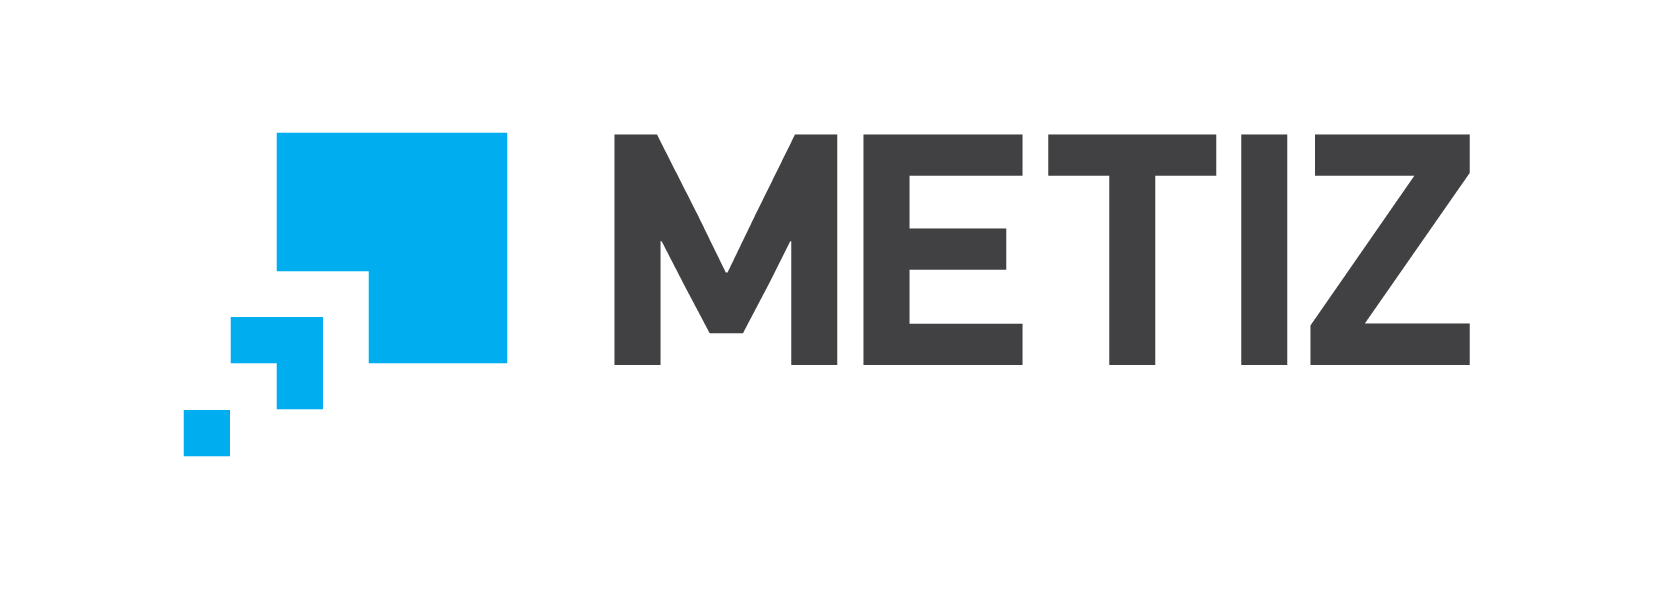 METIZ PRODUCTION LLC